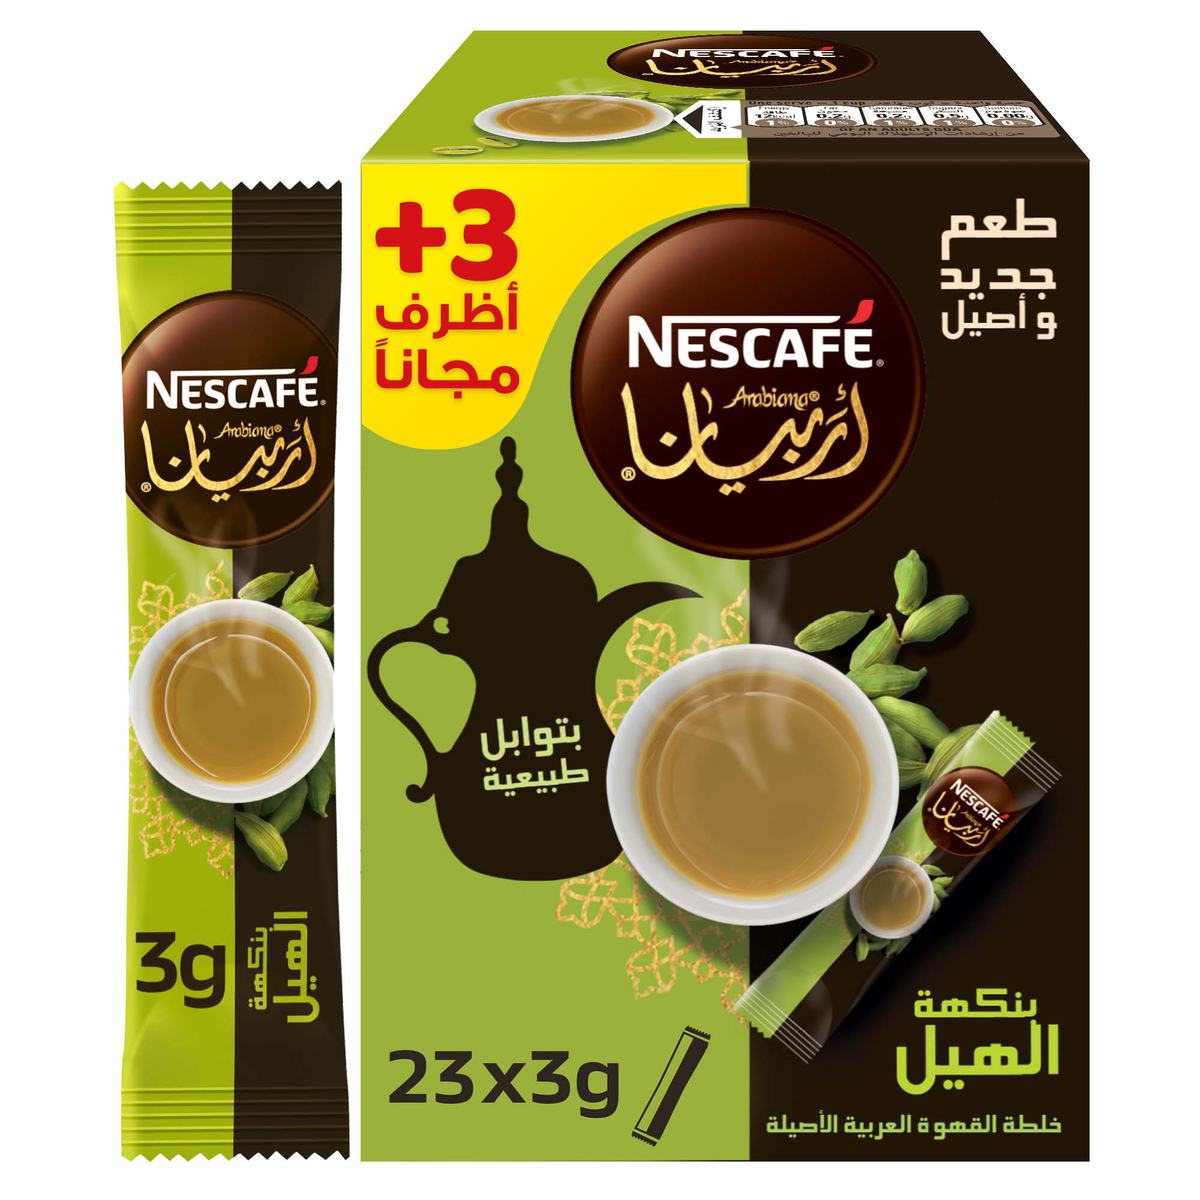 Nescafe Arabiana Coffee with Cardamom 3 g 20+3